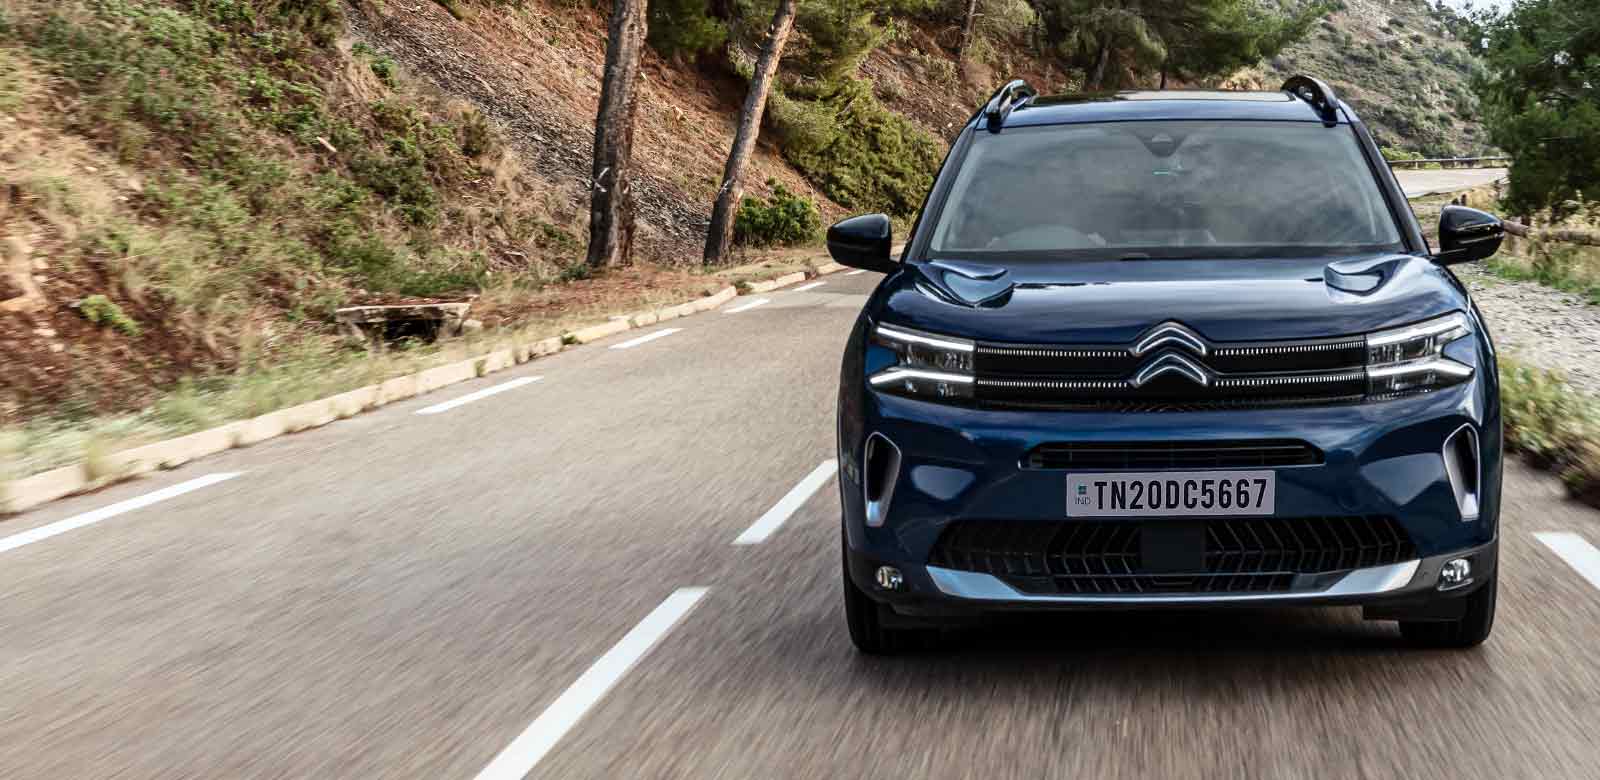 Citroën Discount Offers: इस फरवरी, सिट्रोएन की कारों पर मिल रही है भारी छूट, कर सकते 3.5 लाख रुपये तक की बचत 